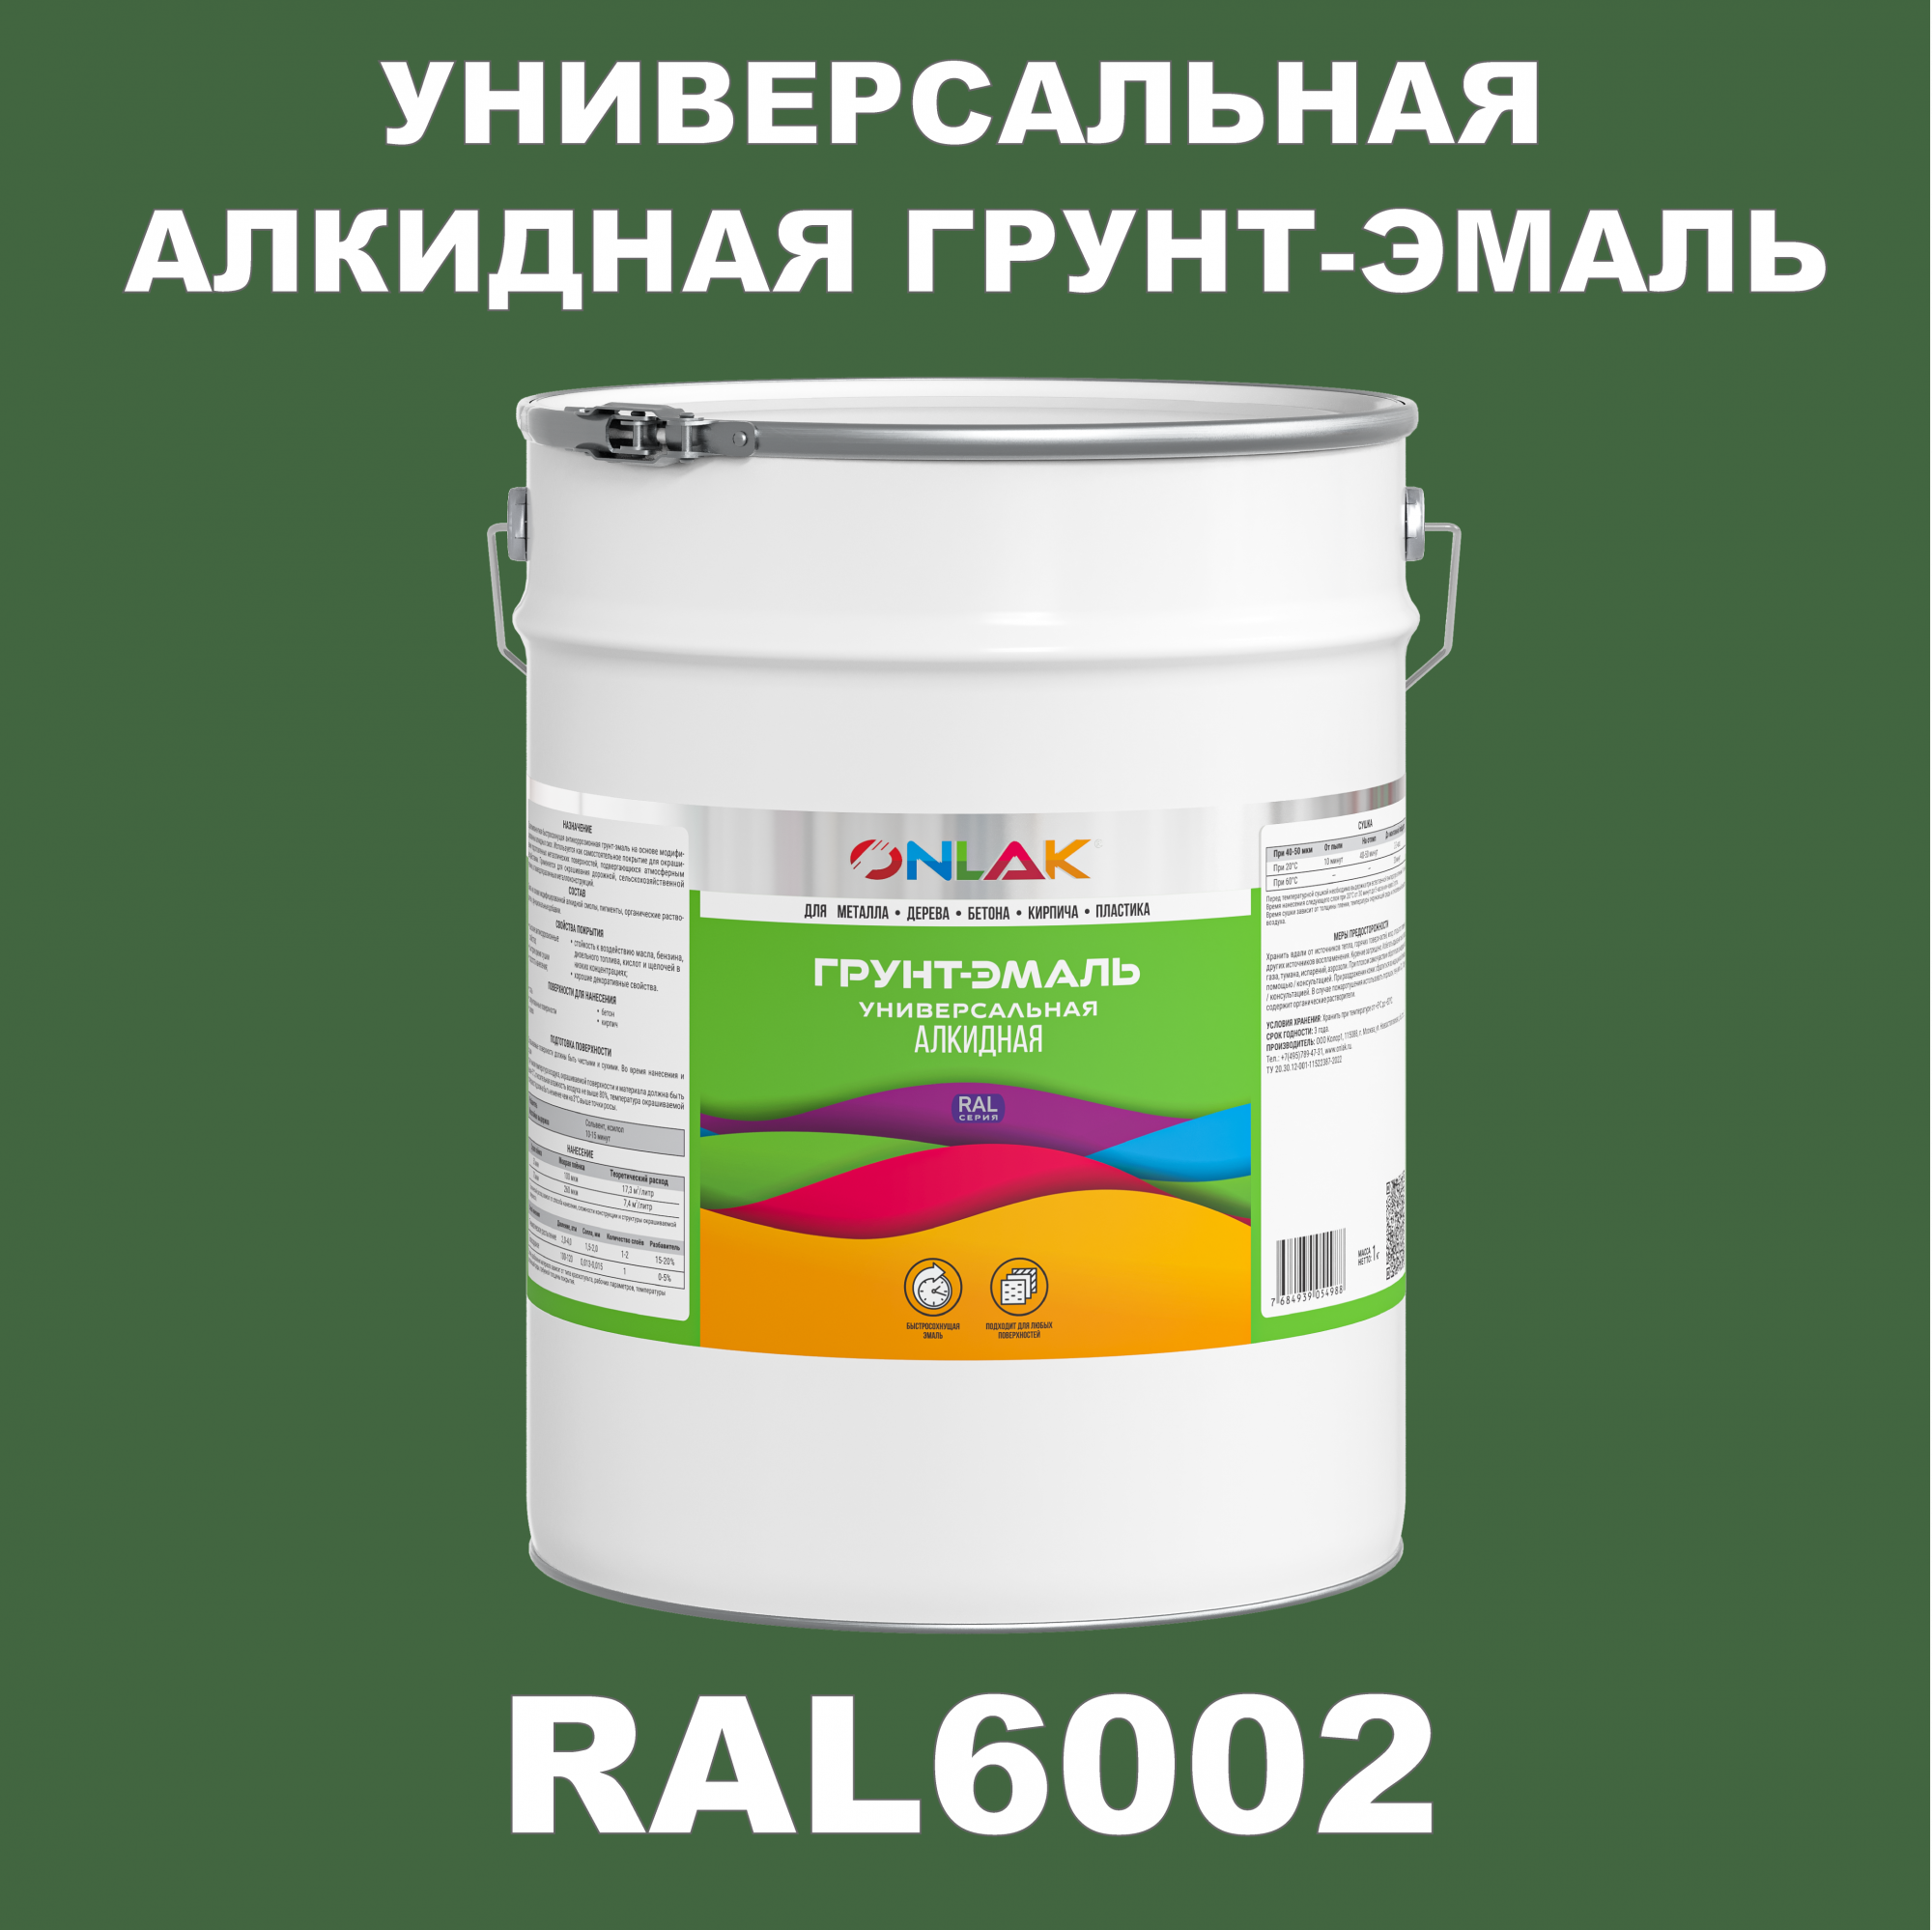 Грунт-эмаль ONLAK 1К RAL6002 антикоррозионная алкидная по металлу по ржавчине 20 кг грунт эмаль skladno по ржавчине алкидная желтая 1 8 кг